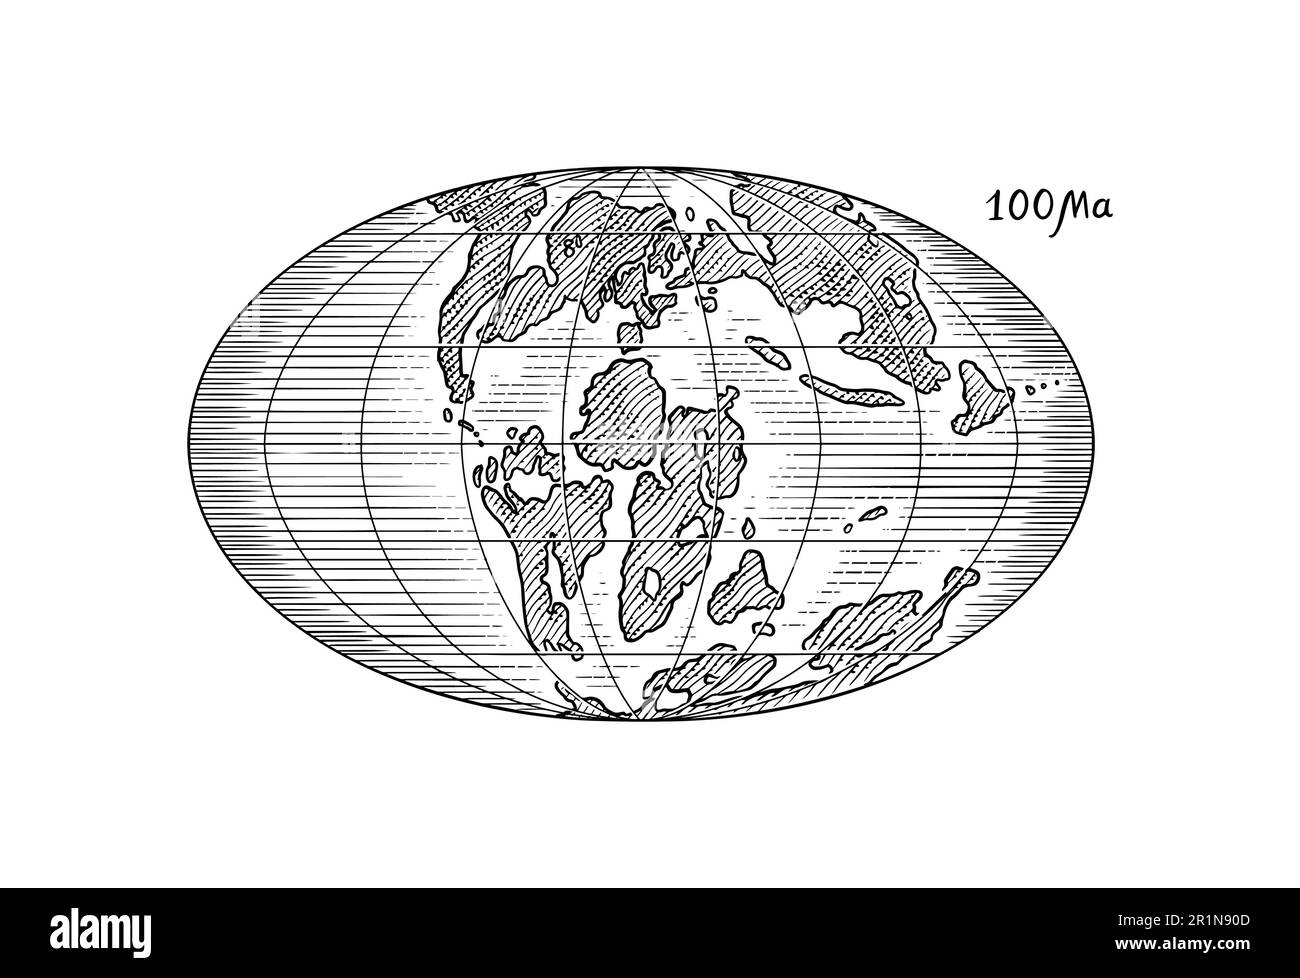 Plattentektonik auf dem Planeten Erde. Pangaea. Kontinentale Drift. Superkontinent bei 100 Ma. Die Ära der Dinosaurier. Jurassezeit. Mesozoisch. Handgezeichnet Stock Vektor